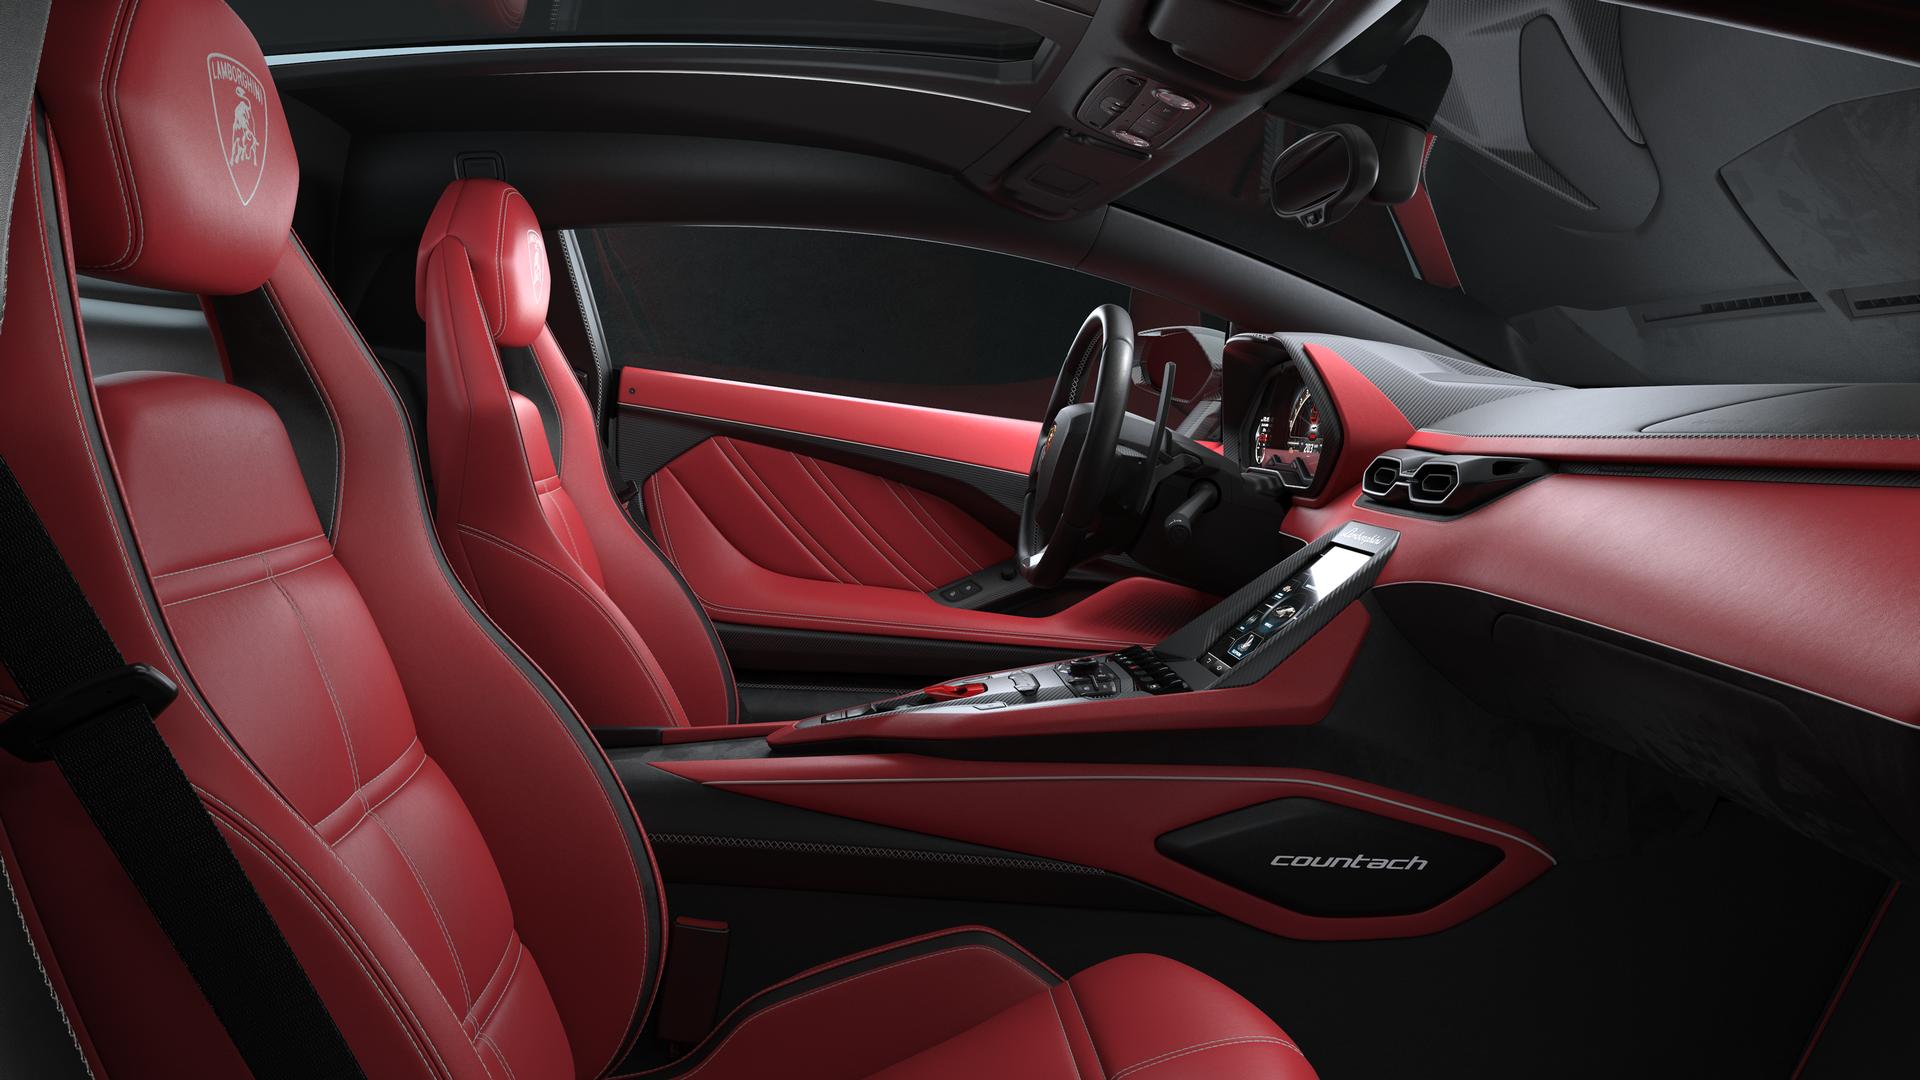 2022 Lamborghini Countach interior